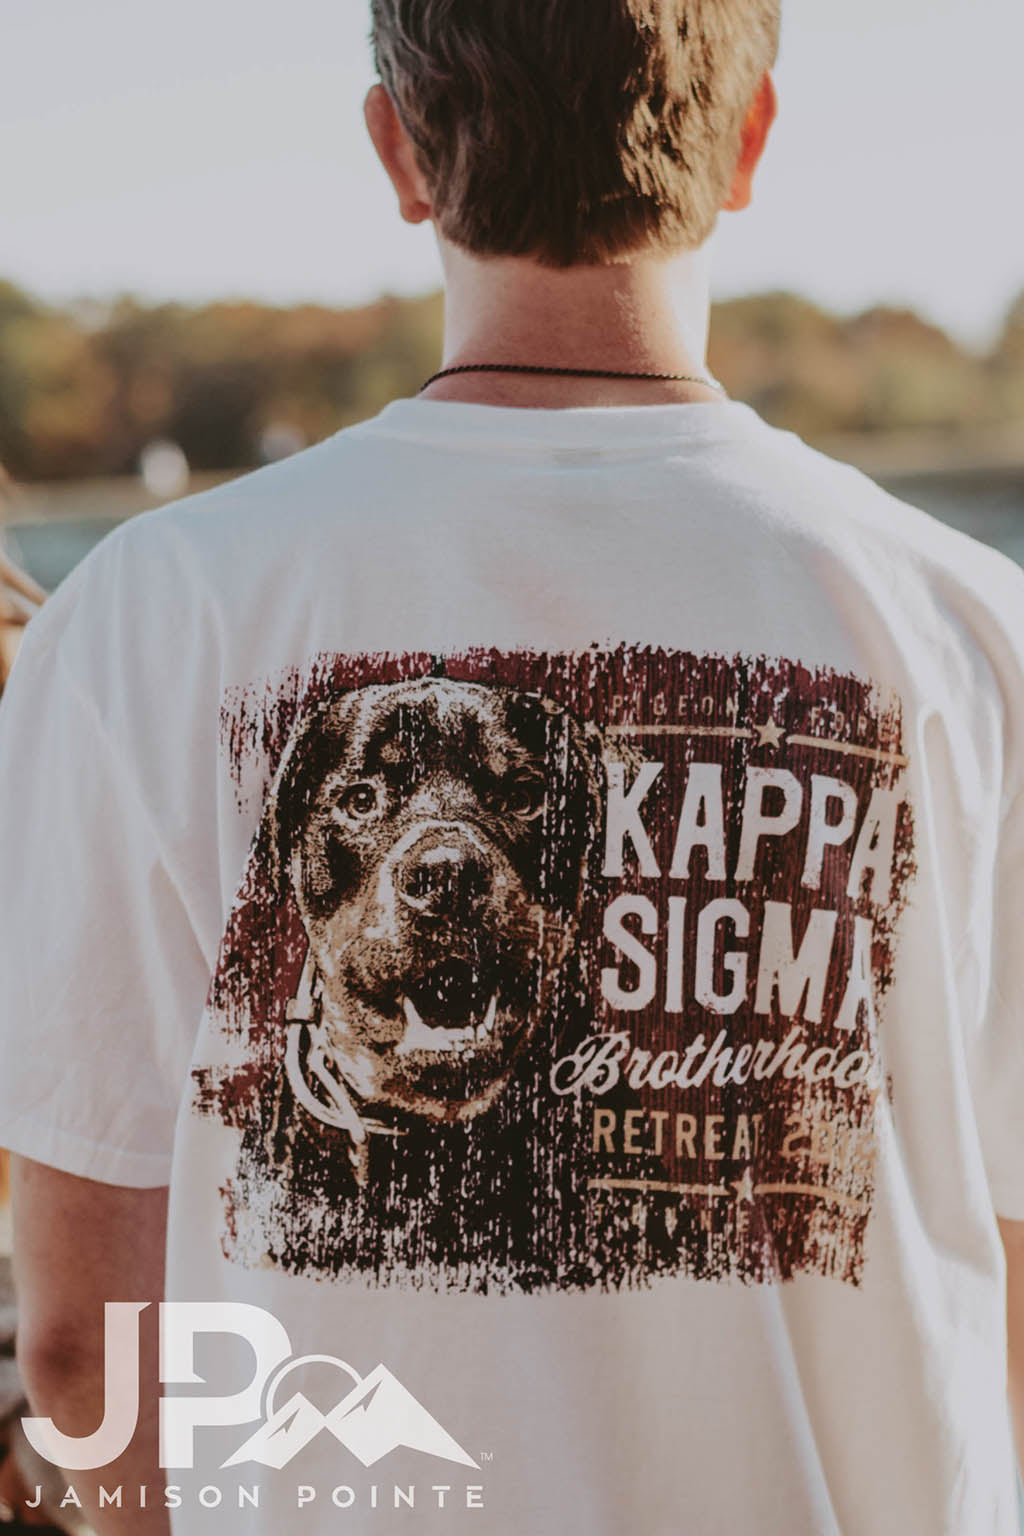 Kappa Sigma Brotherhood Retreat Dog Tee